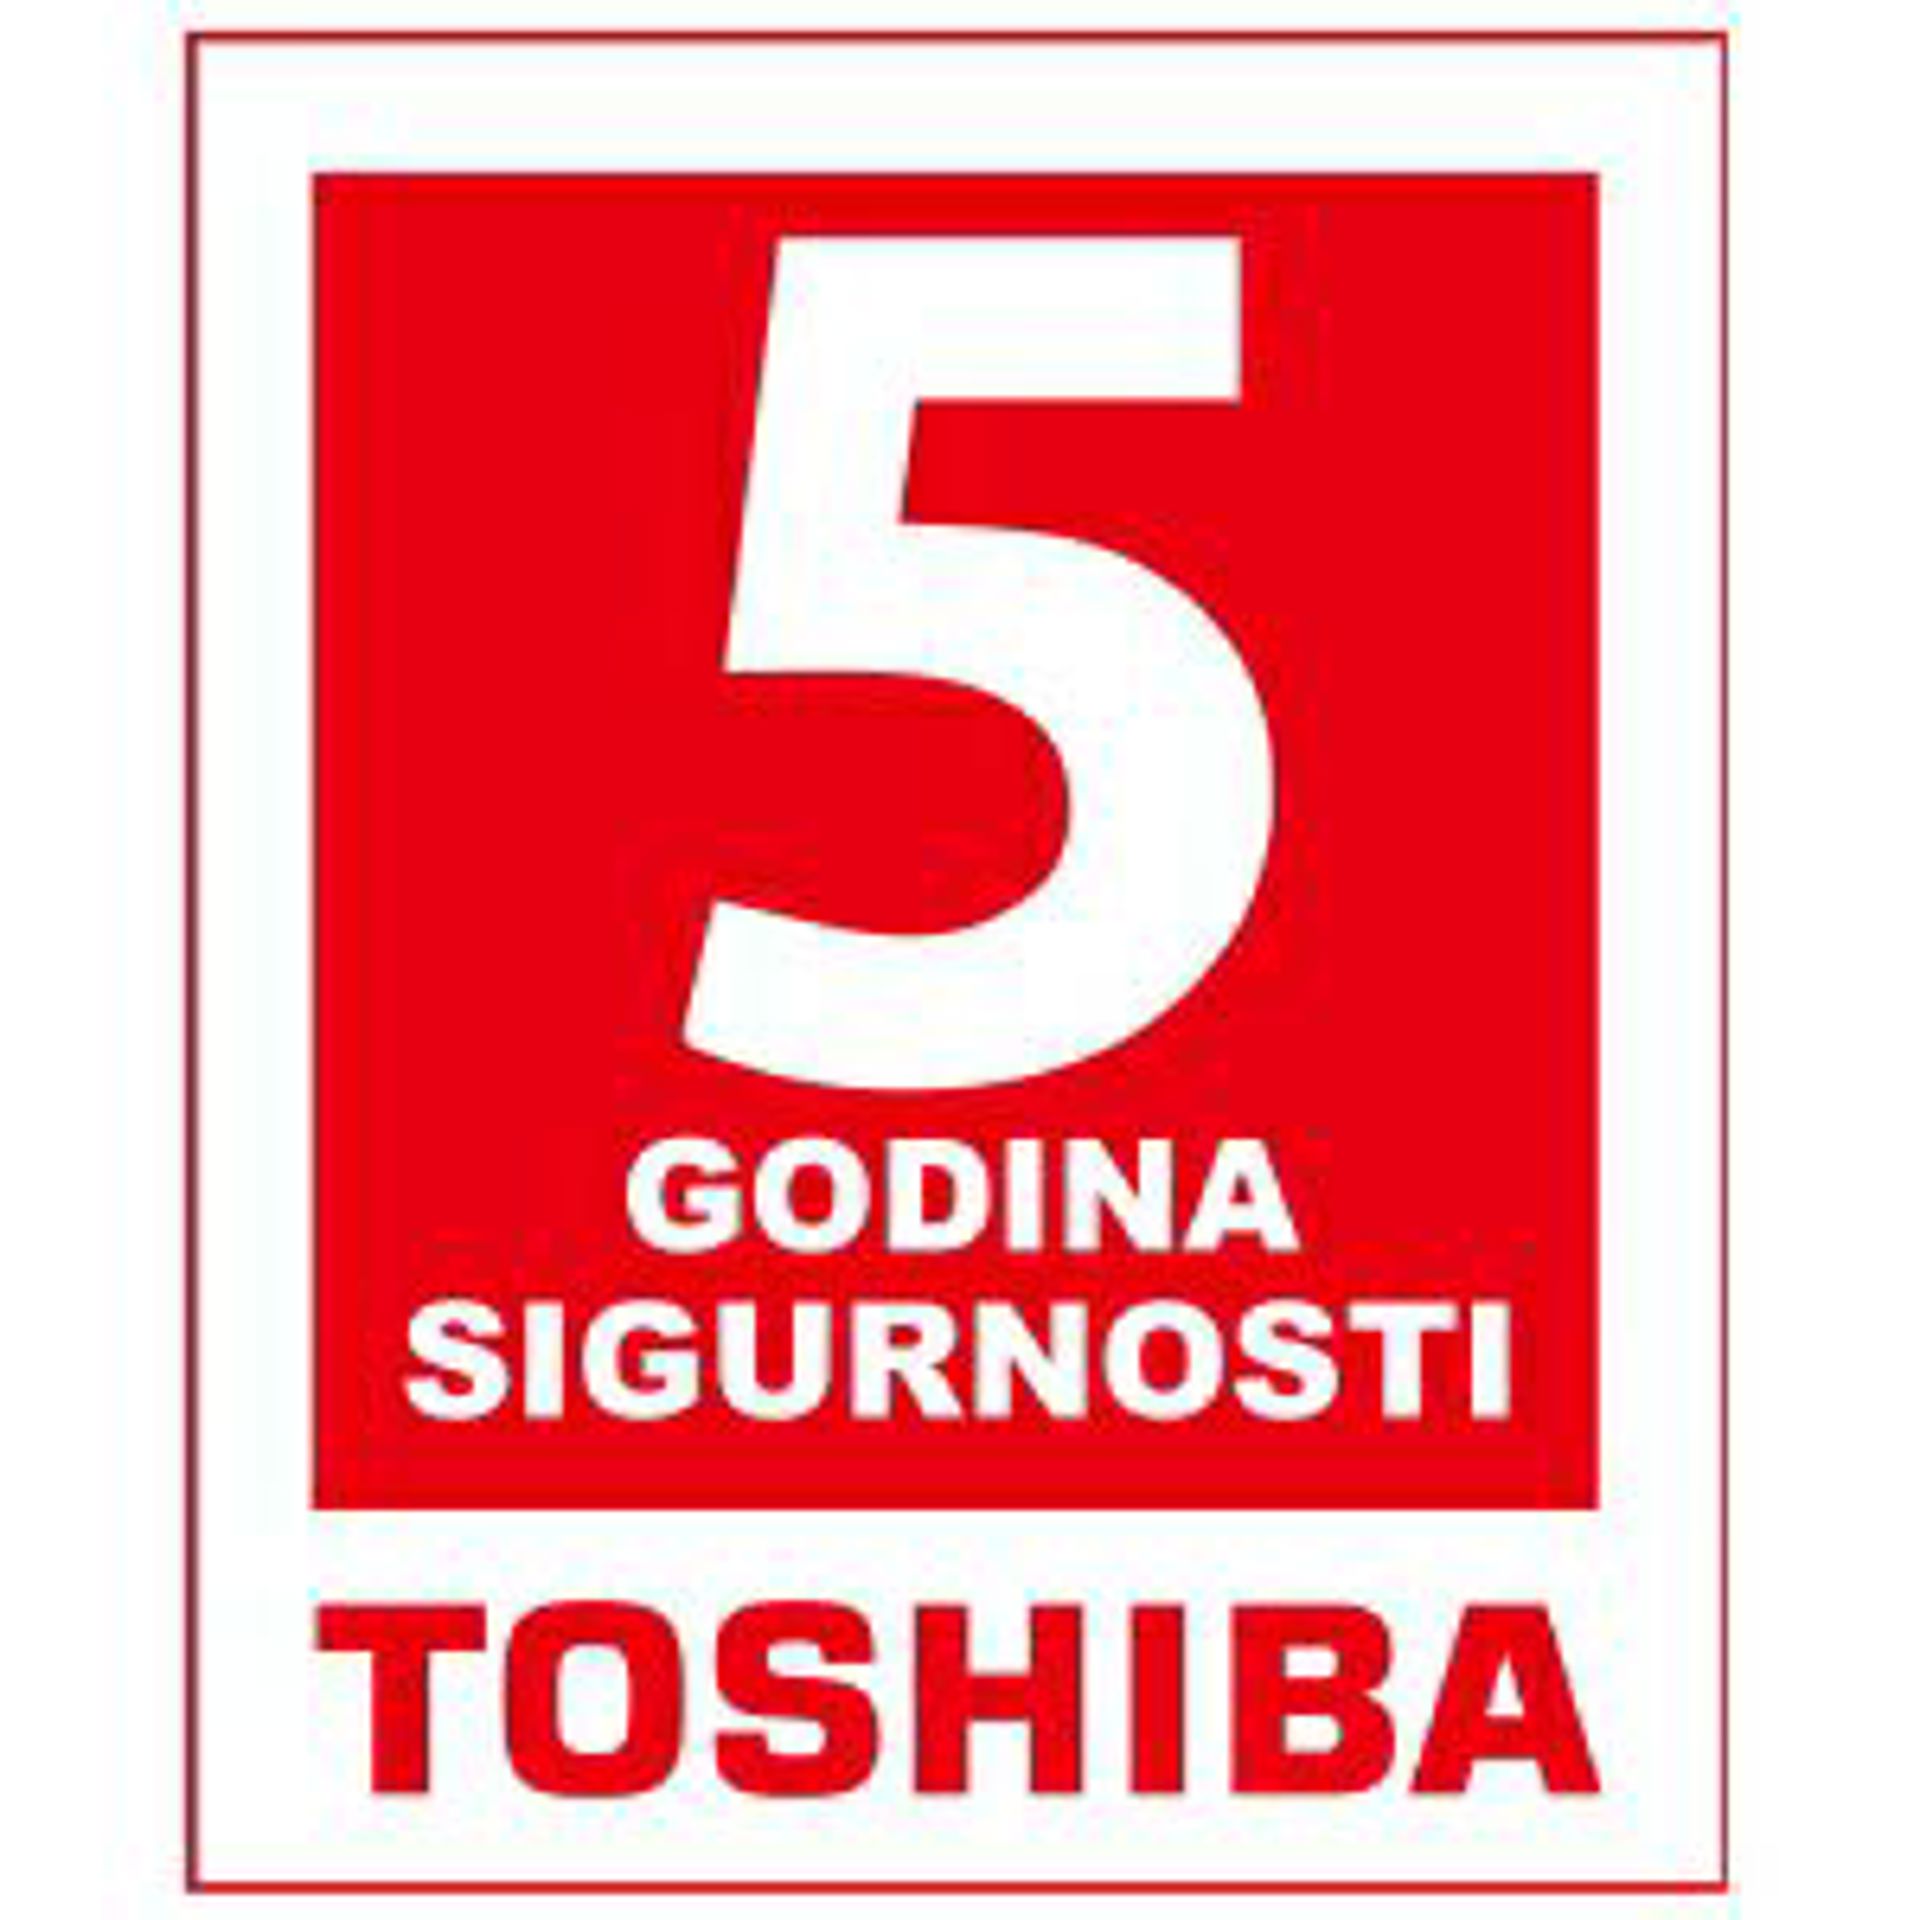 TOSHIBA bijela tehnika sa 5 godina sigurnosti